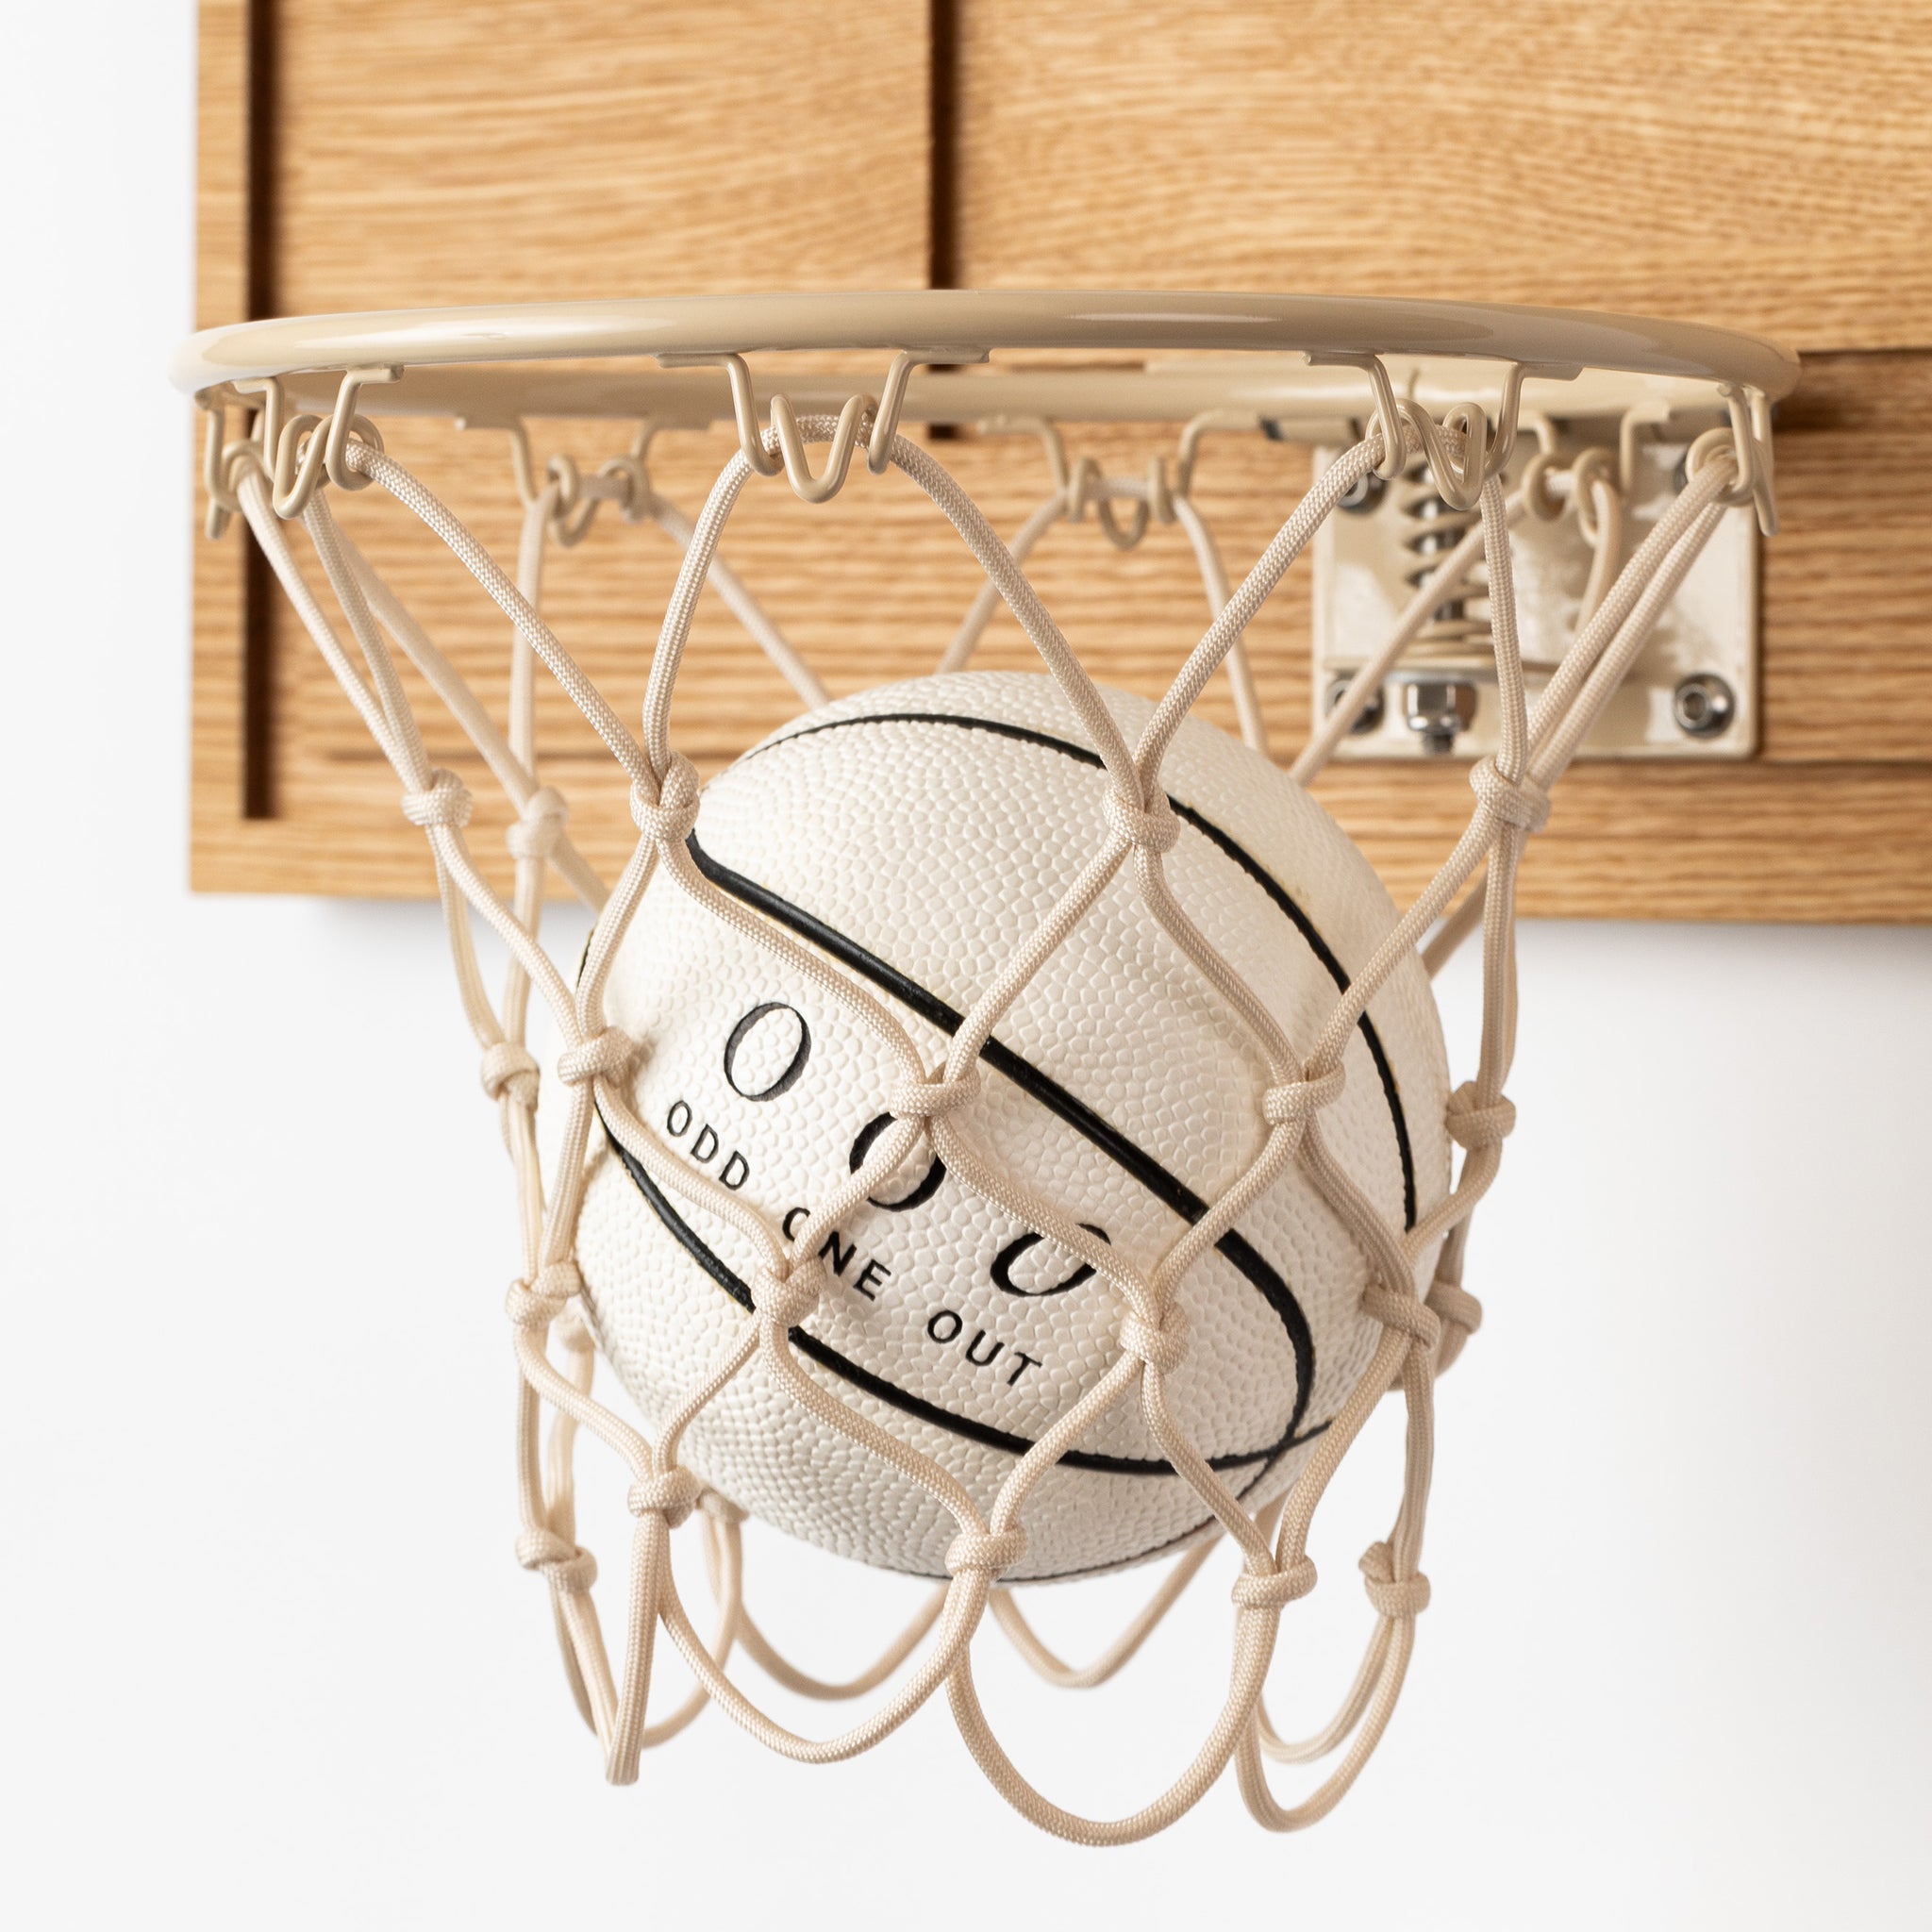 Fancy white oak mini hoop with rubber ball